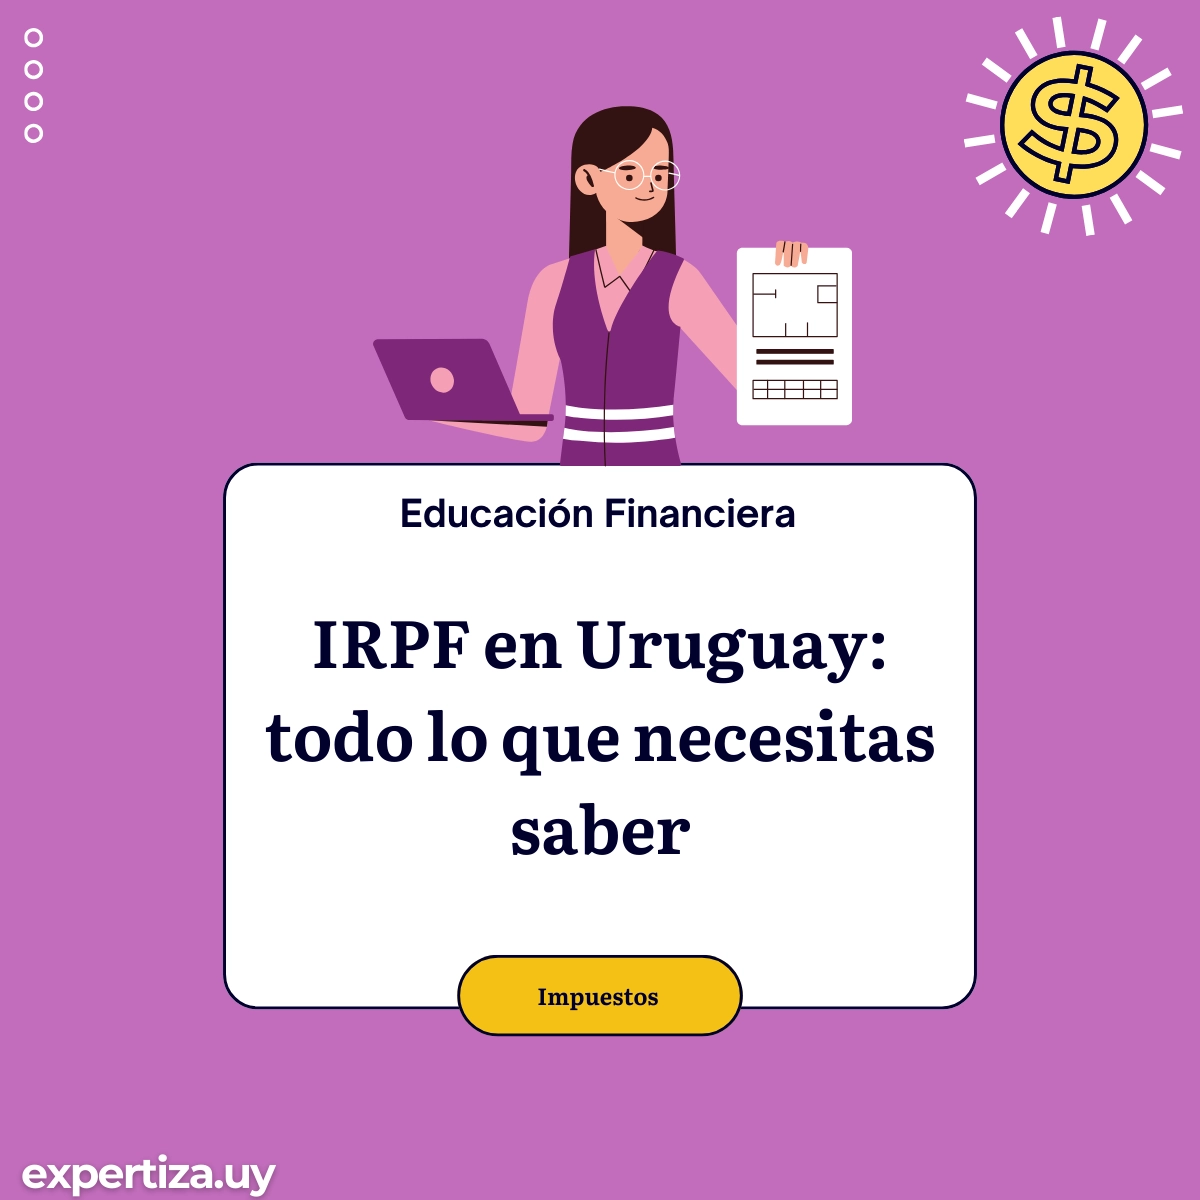 IRPF en Uruguay: todo lo que necesitas saber.